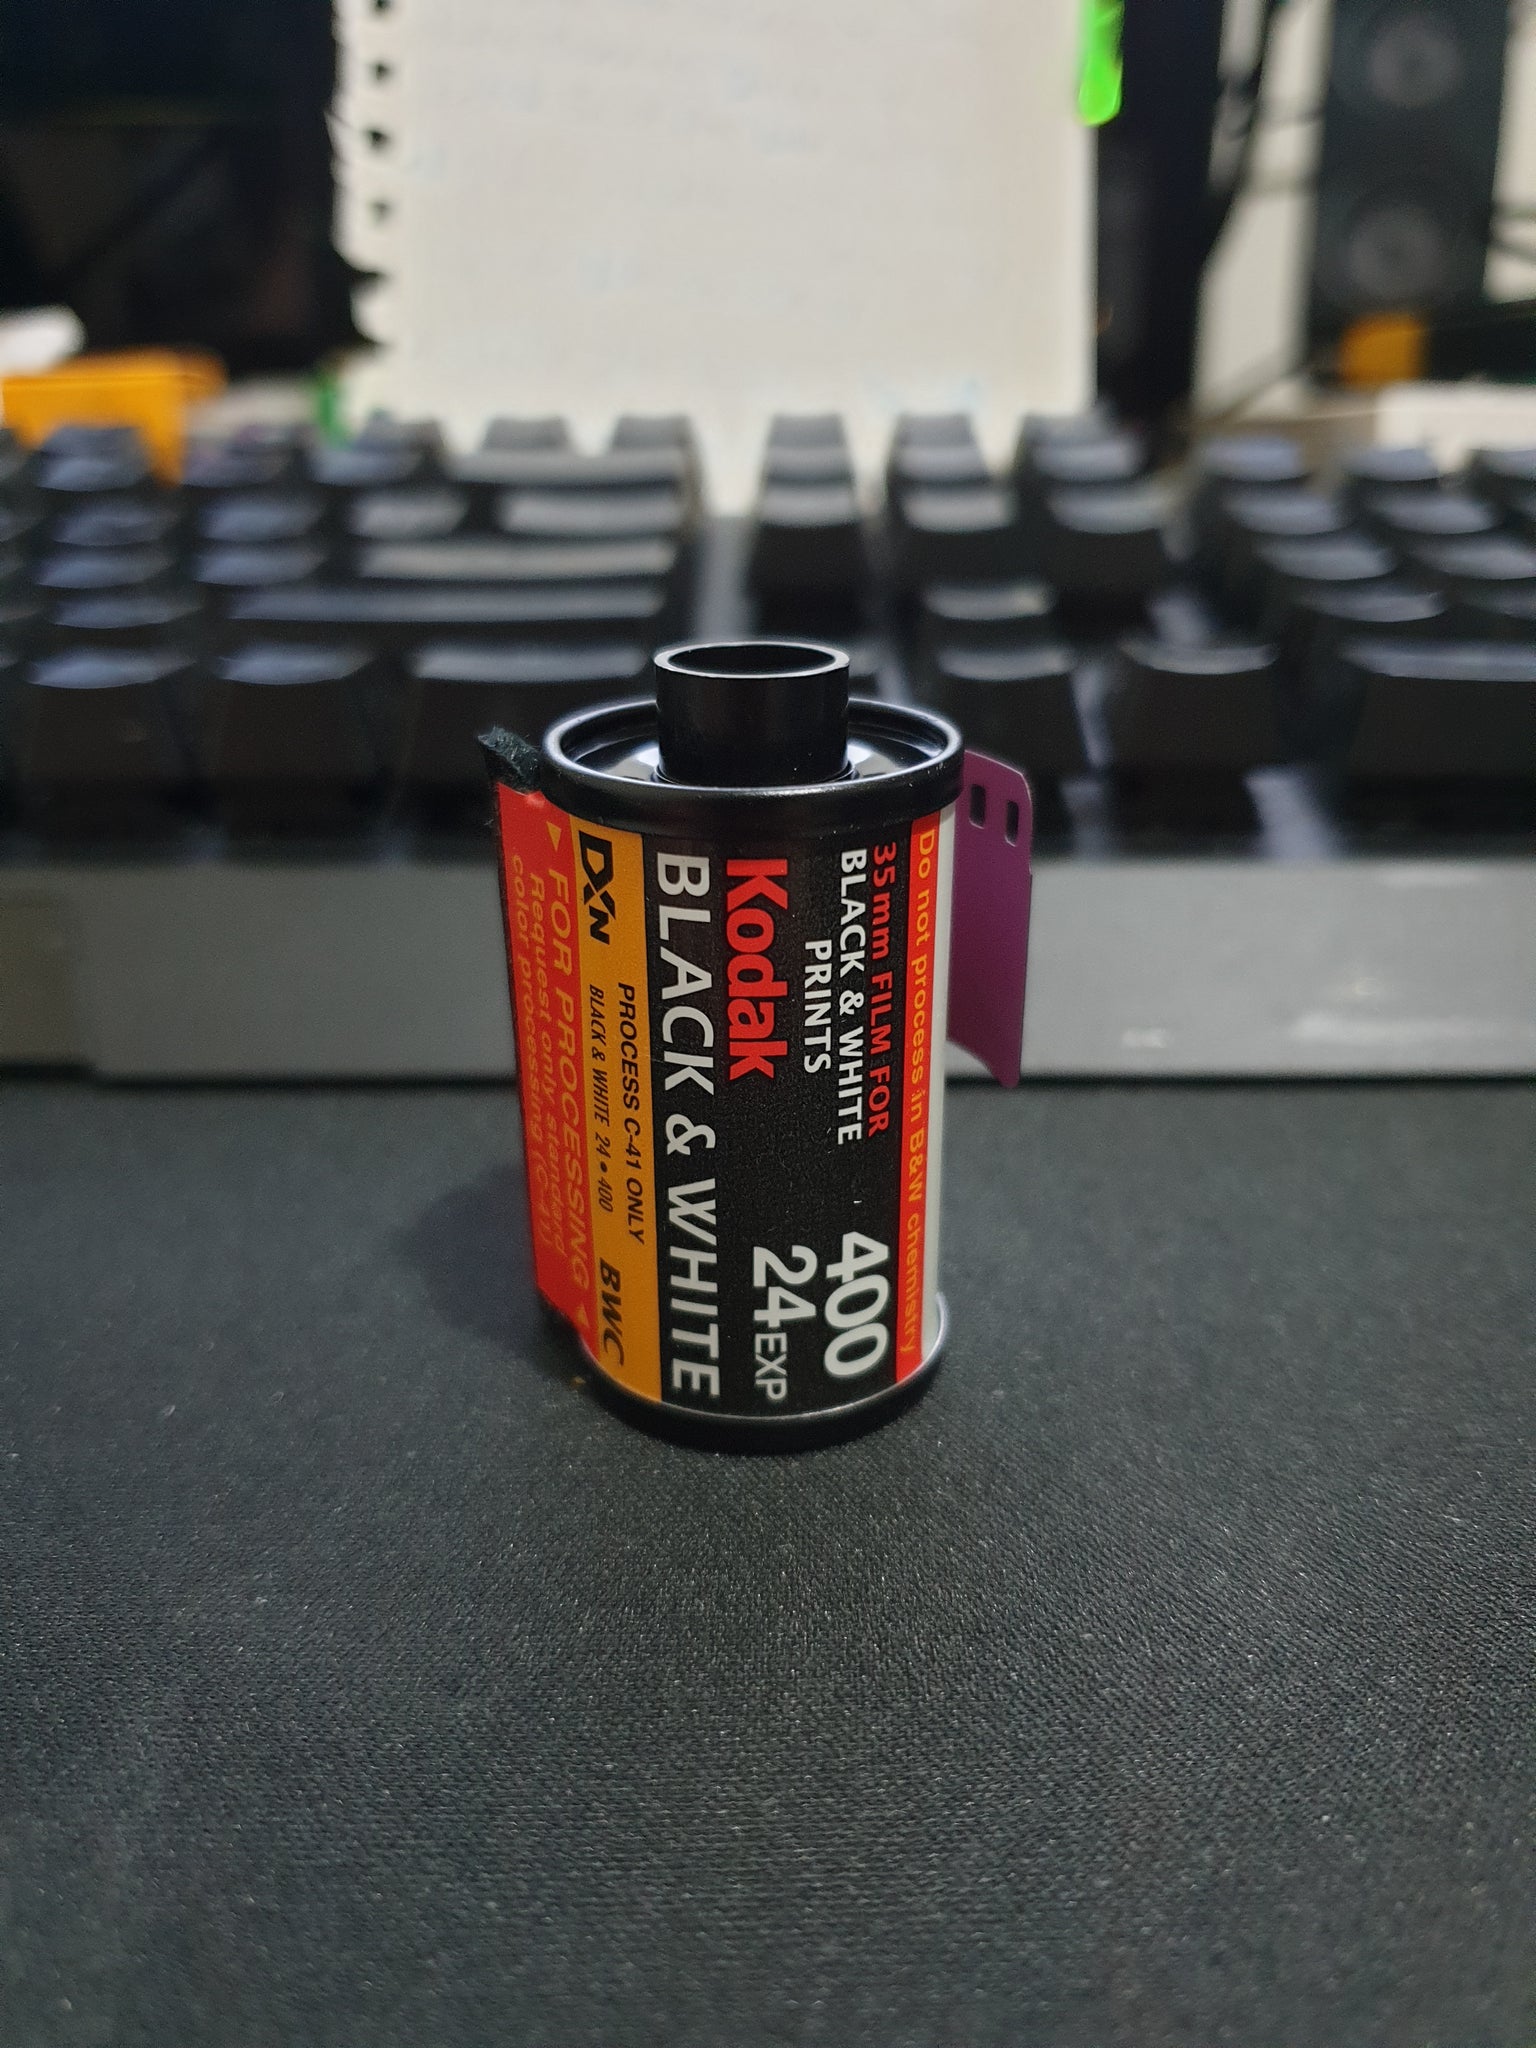 Kodak Black & White 400 24 Exp - Expired 35mm Film